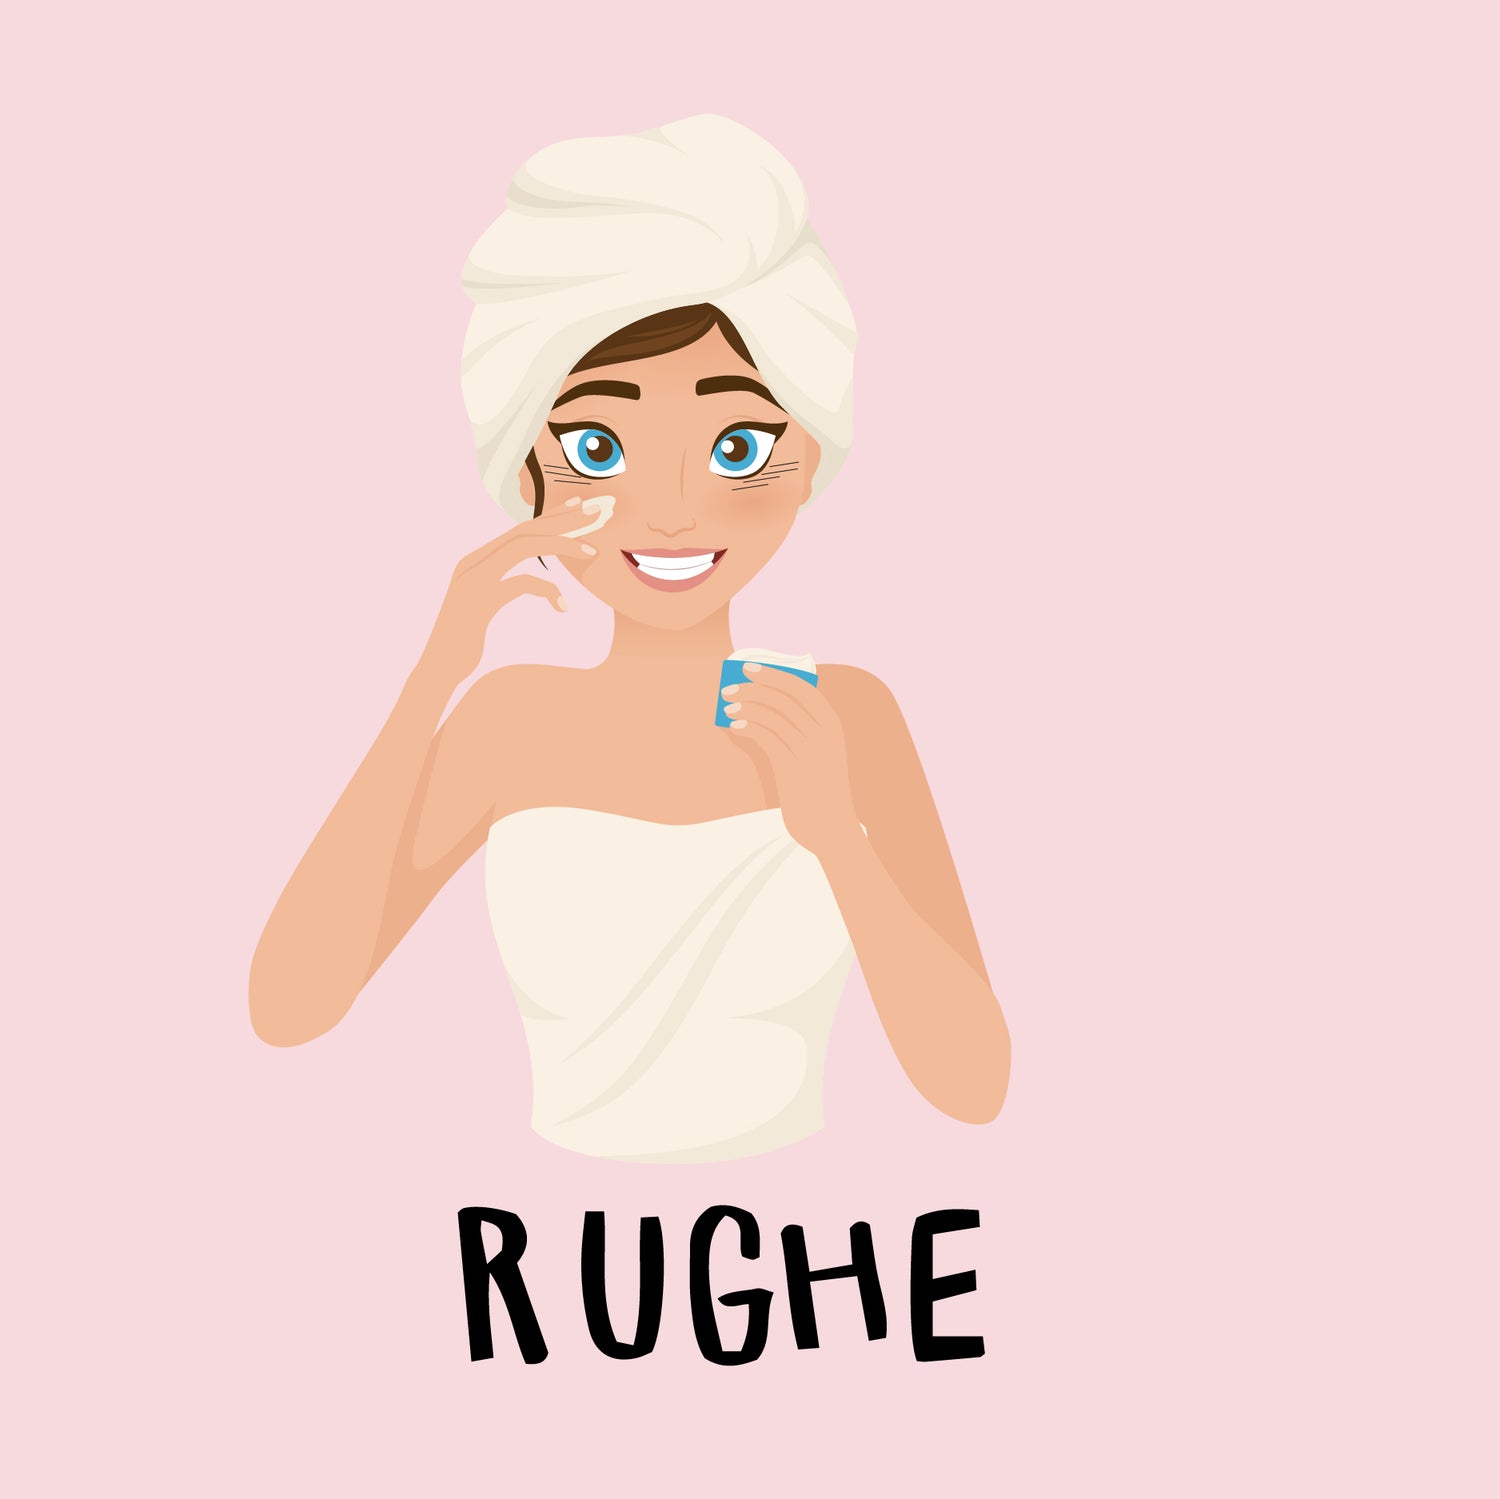 Rughe